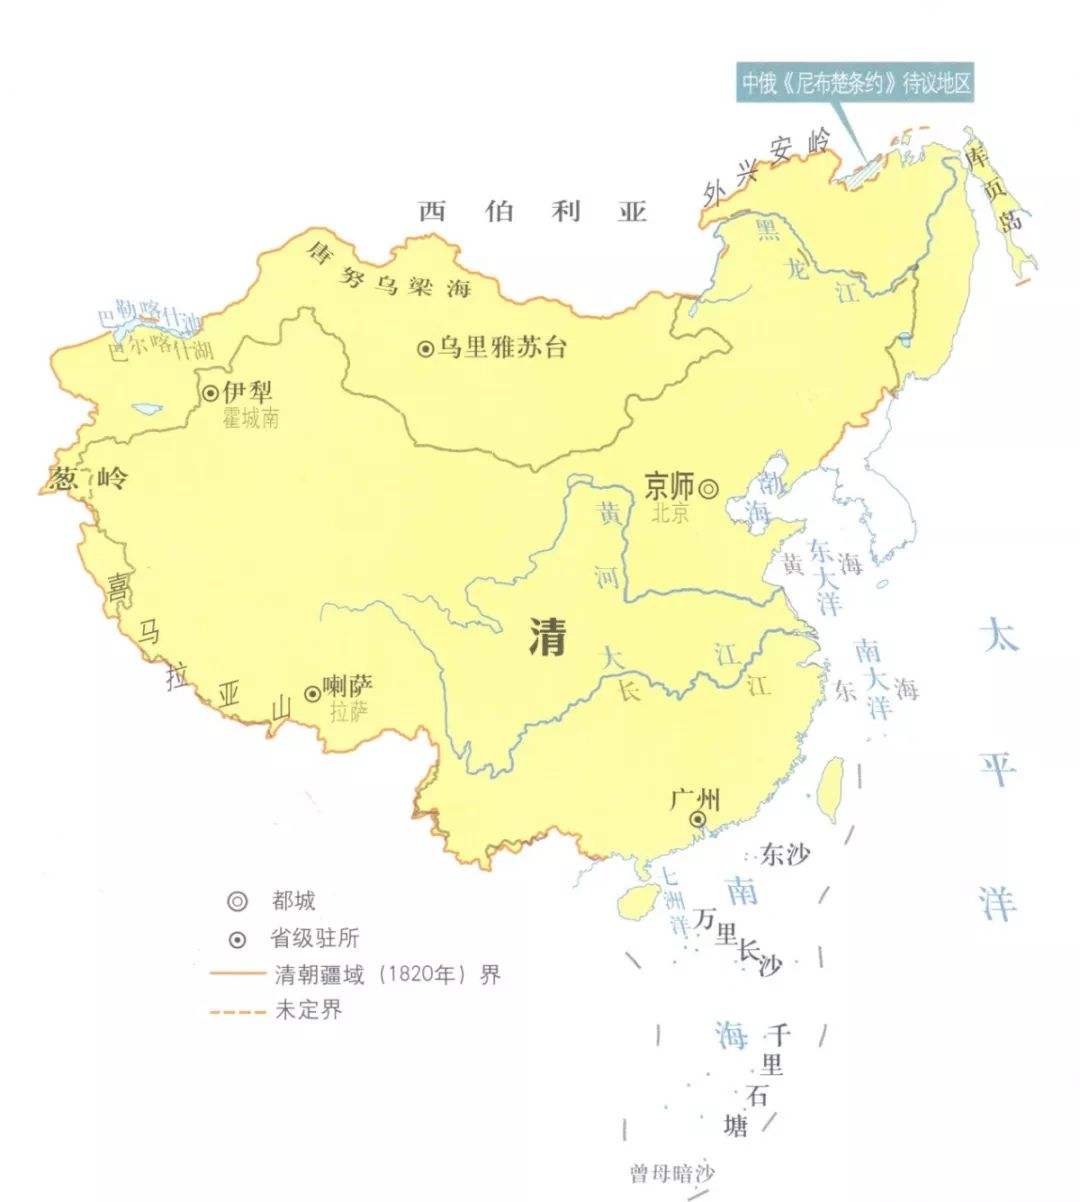 中亚五国并入中国版图图片